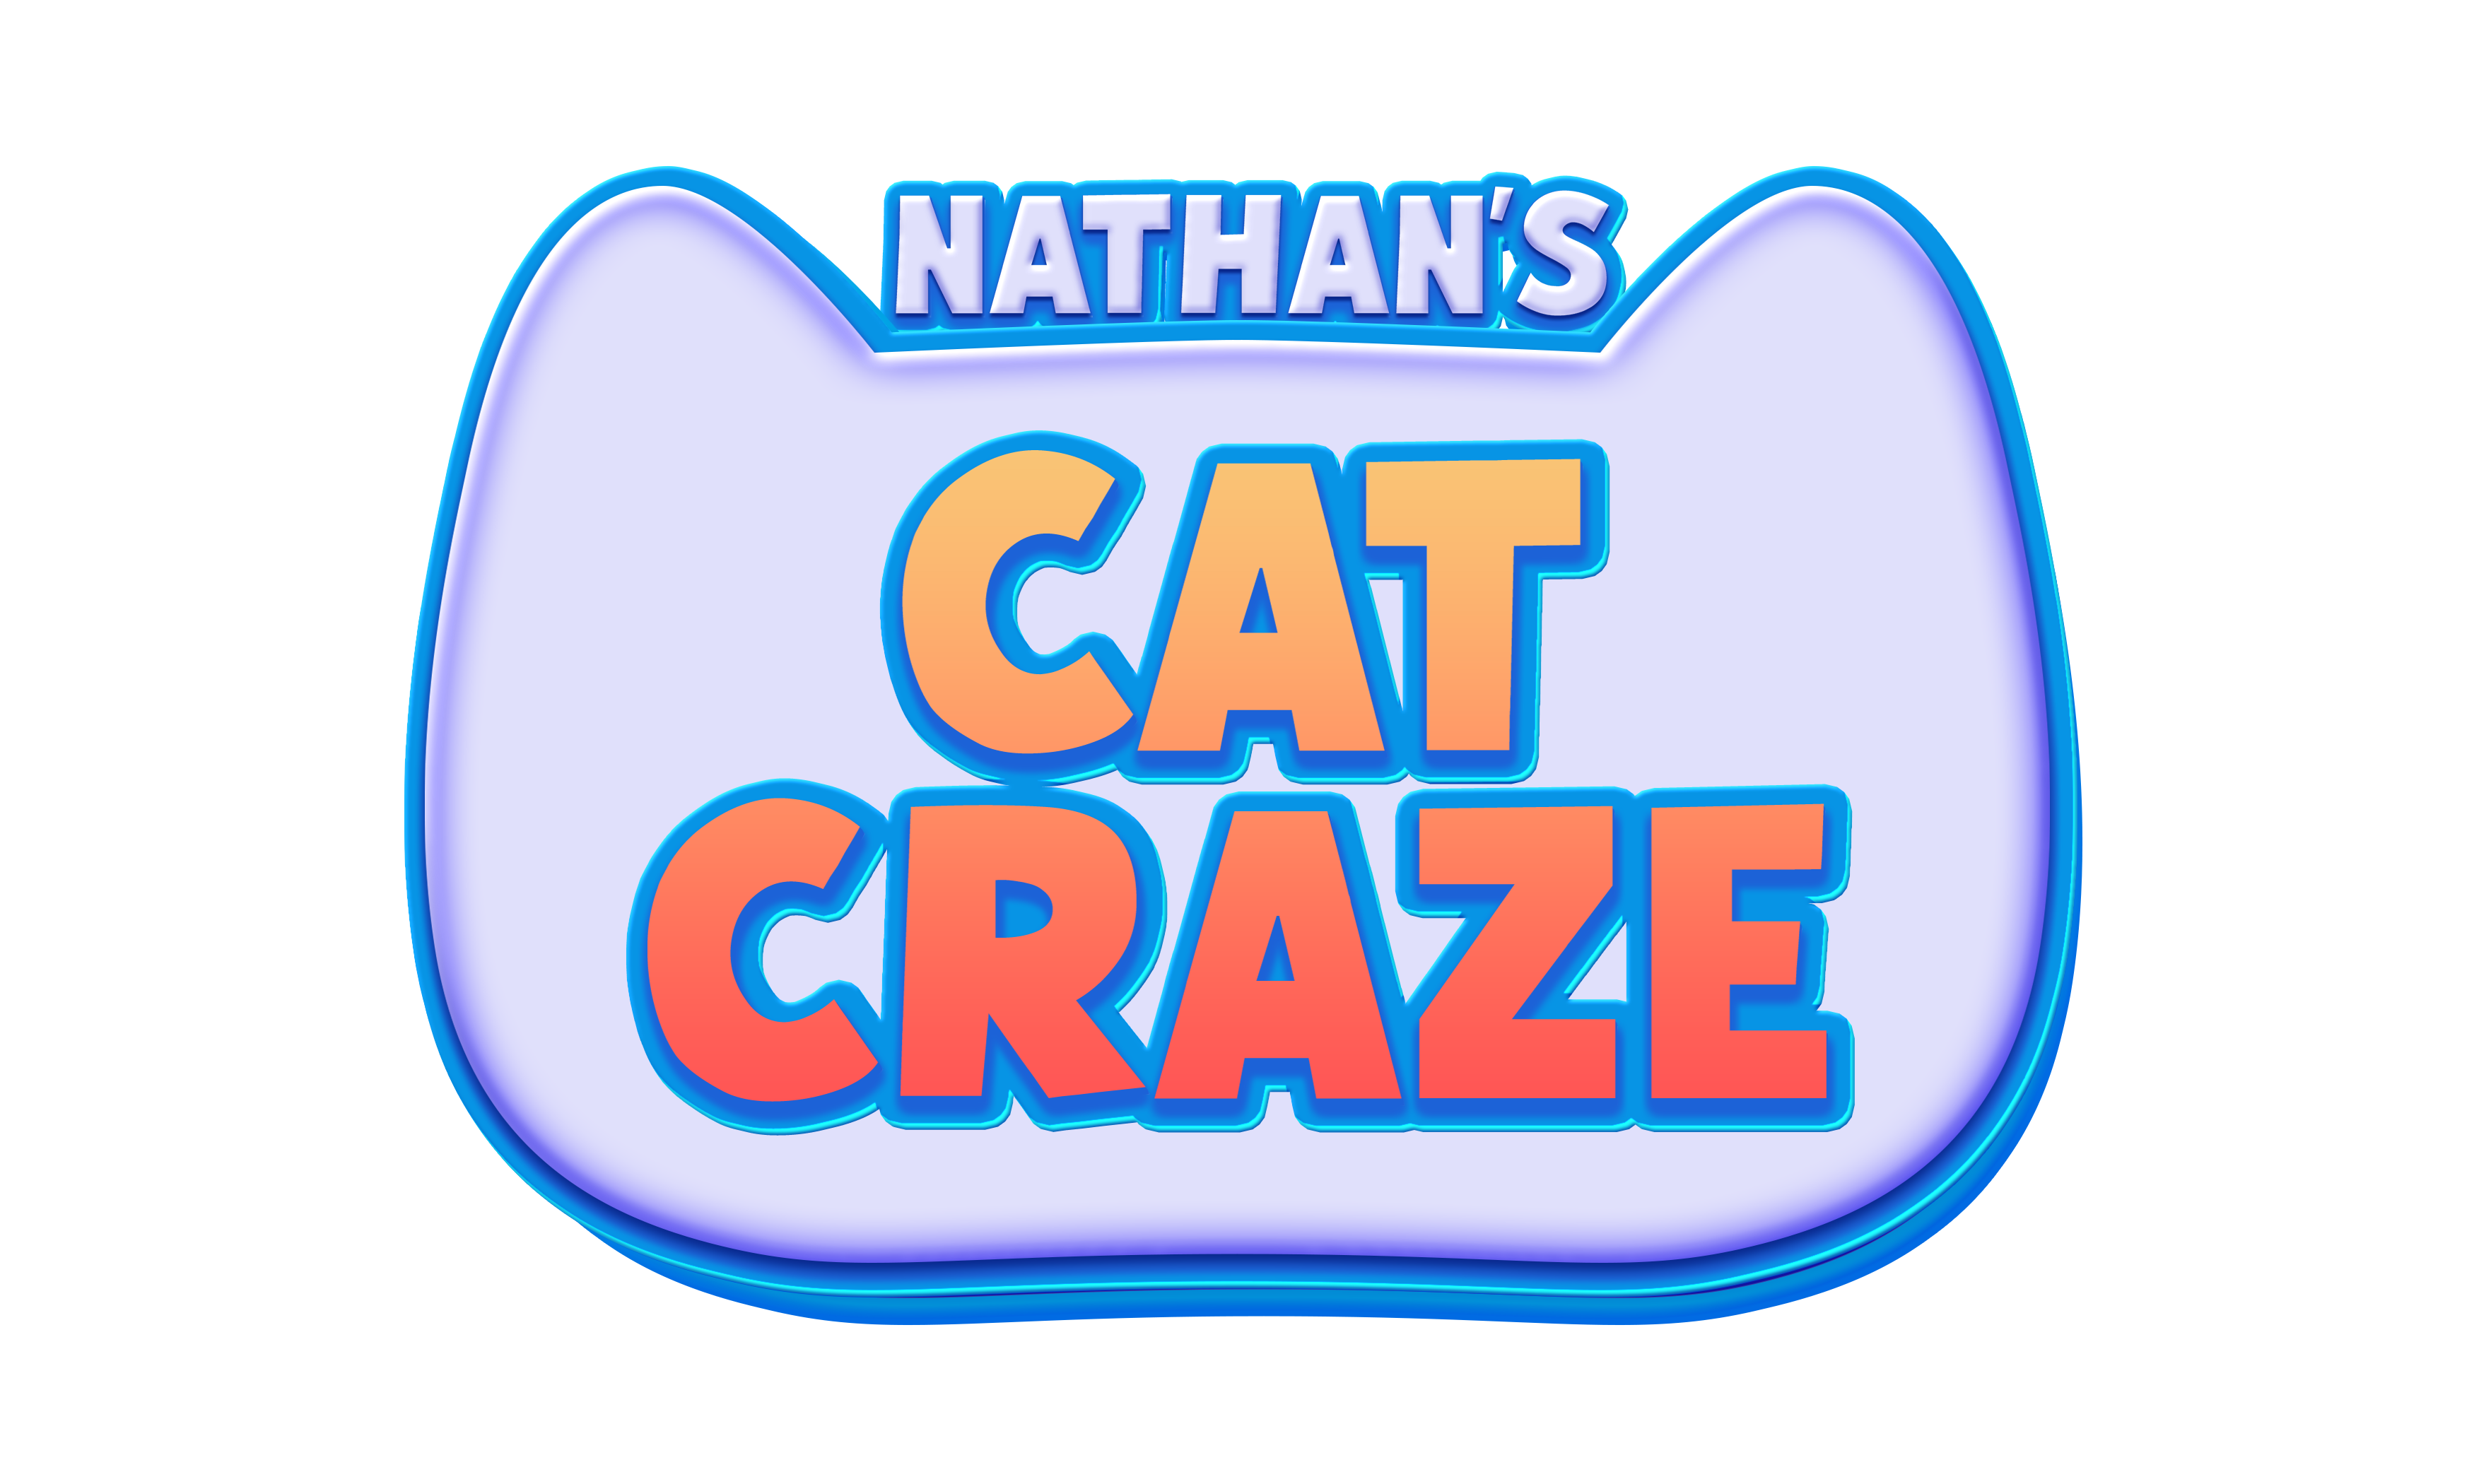 Nathan's Cat Craze